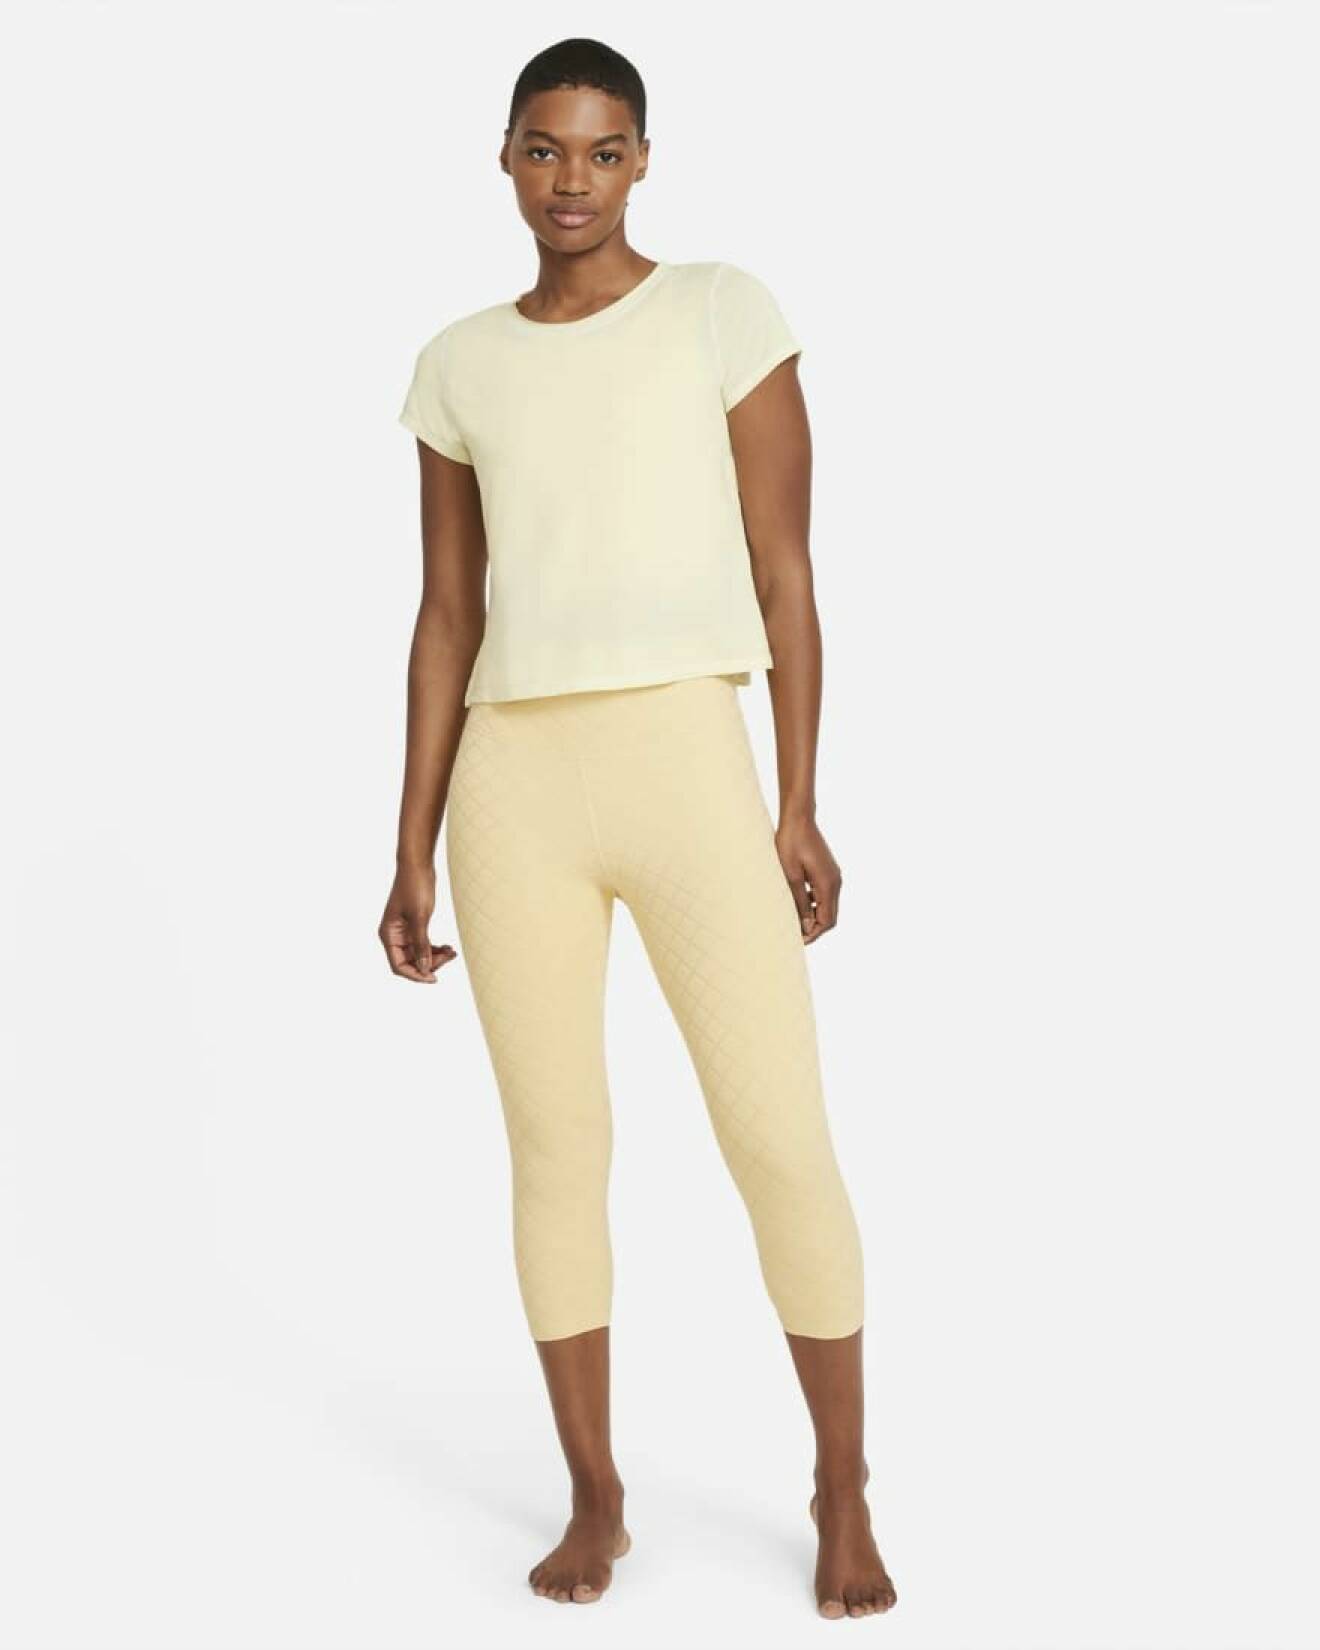 Modell med ljusgul tränings t-shirt och gula trekvarts tights. Träningskläder från Nike.